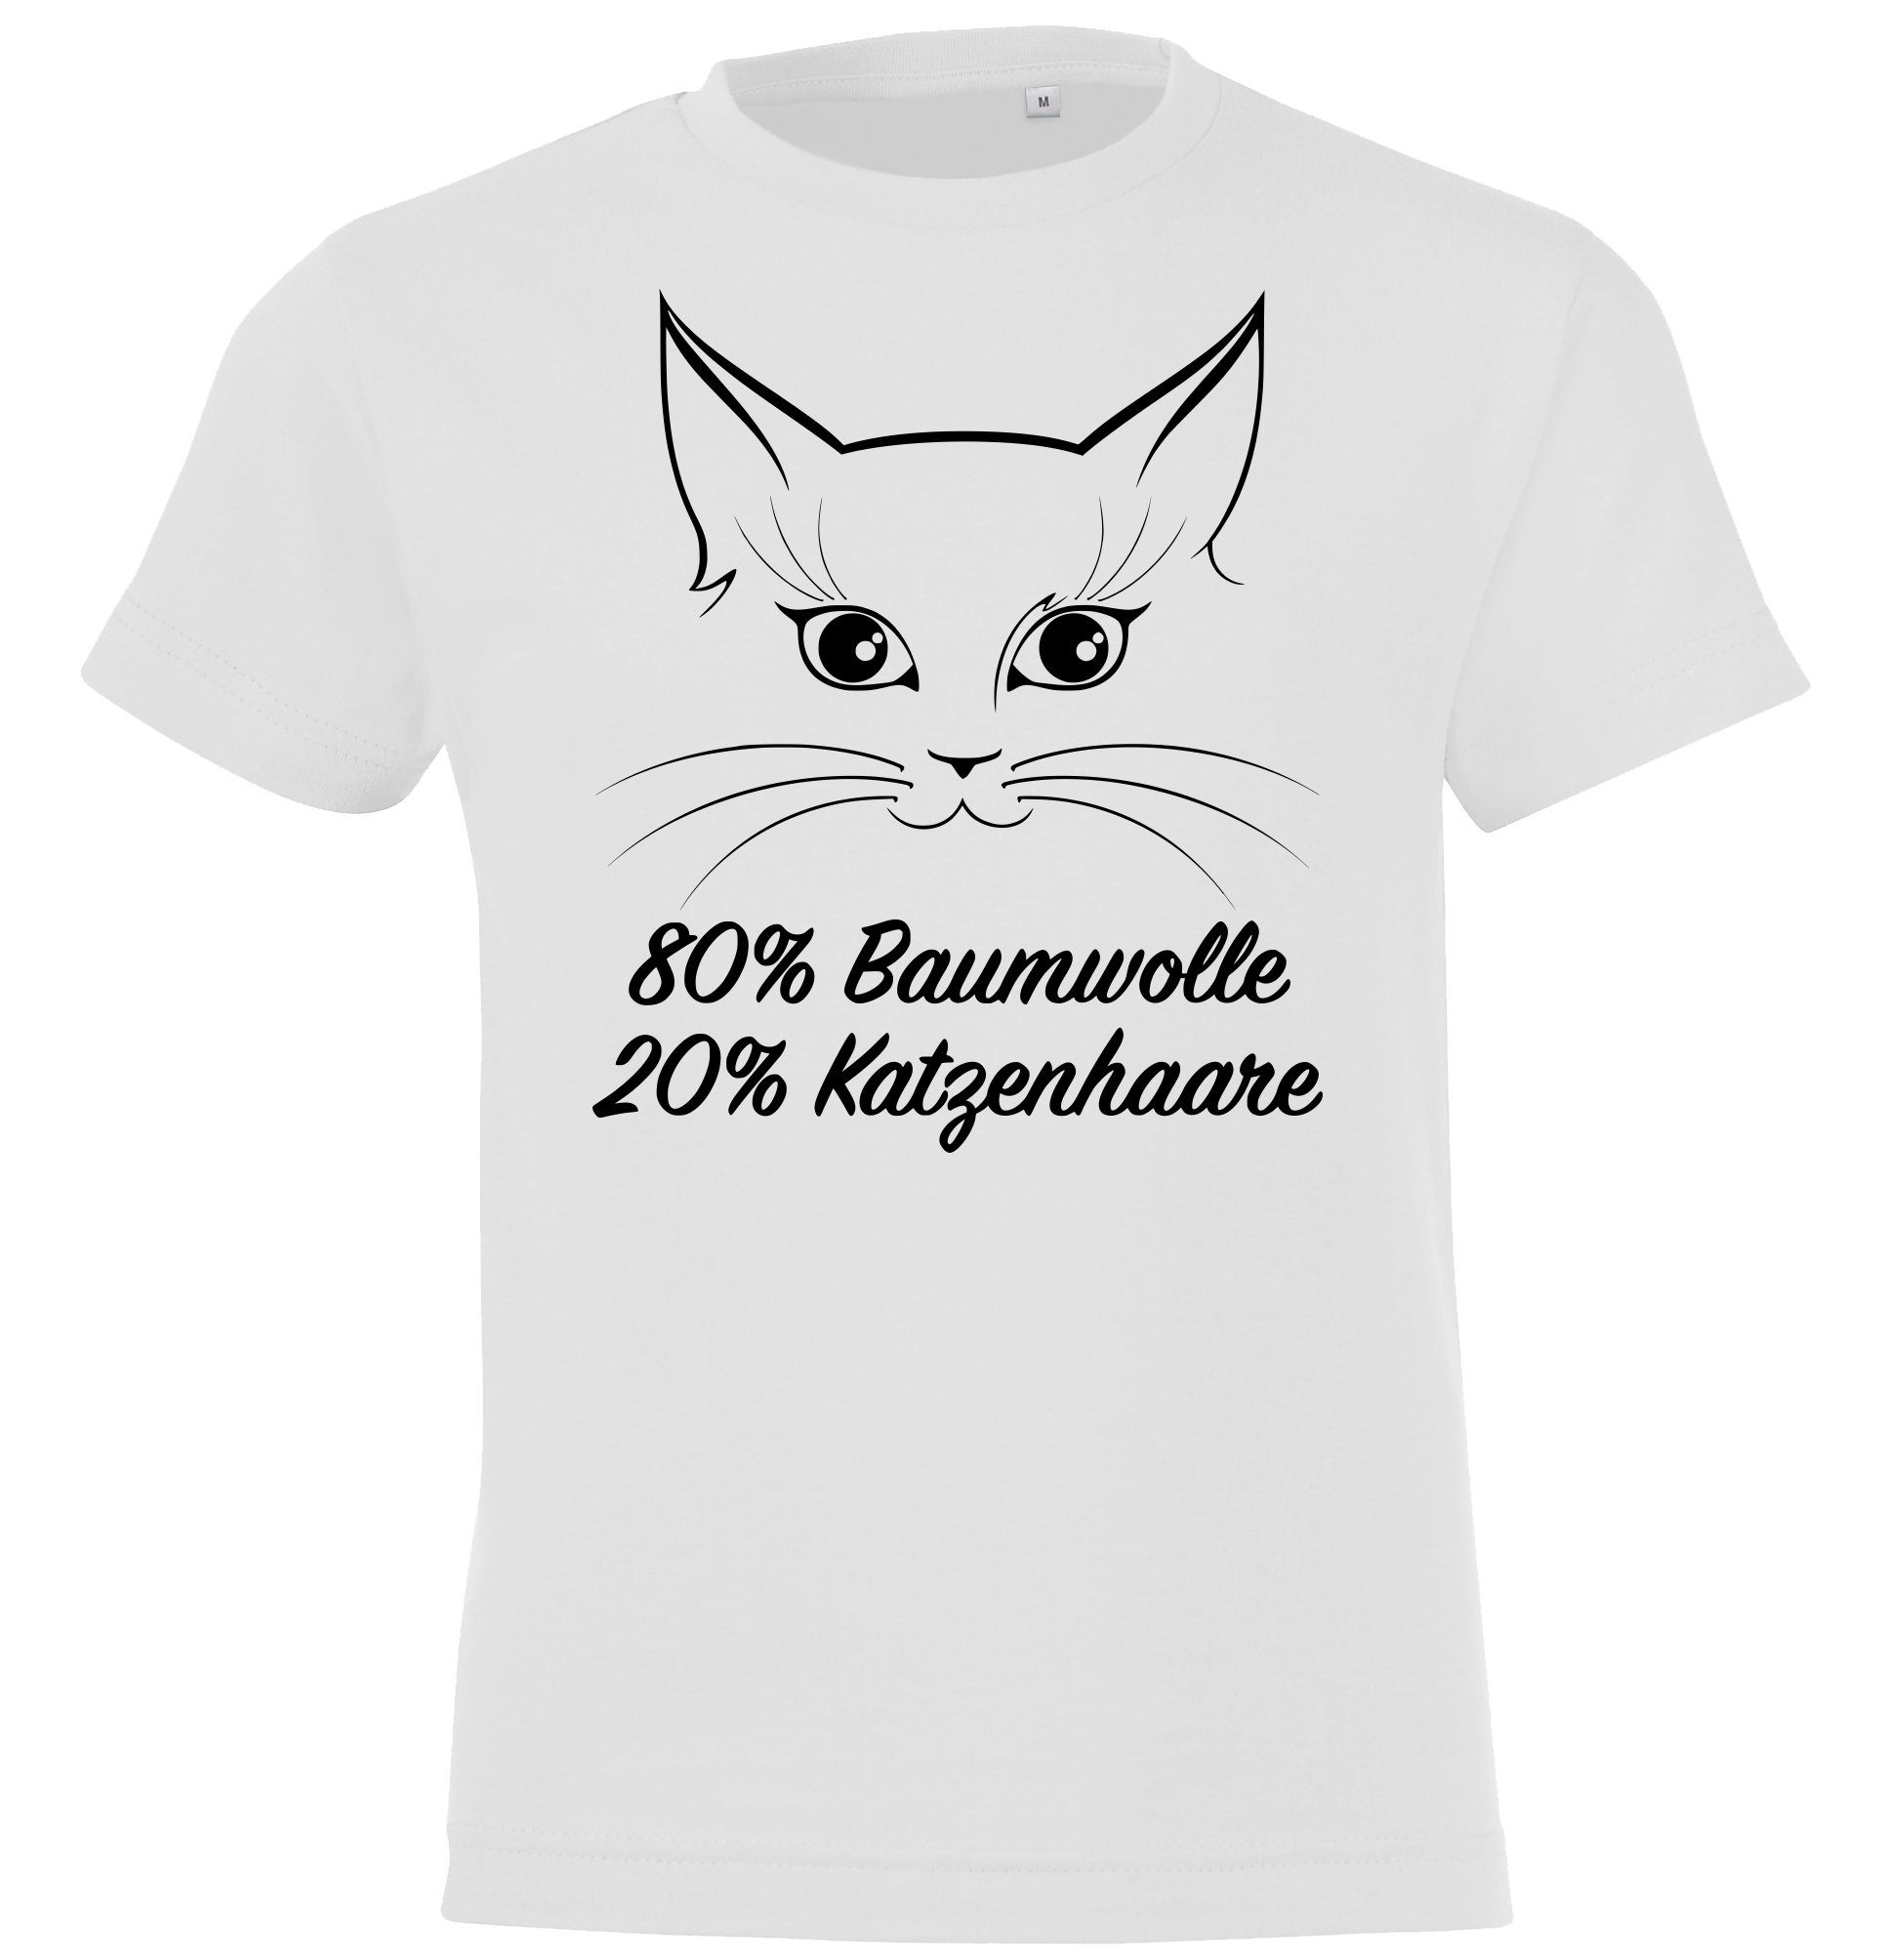 T-Shirt Aufdruck Weiß Designz lustigem Katzenhaare Spruch Youth Shirt mit Katze Kinder